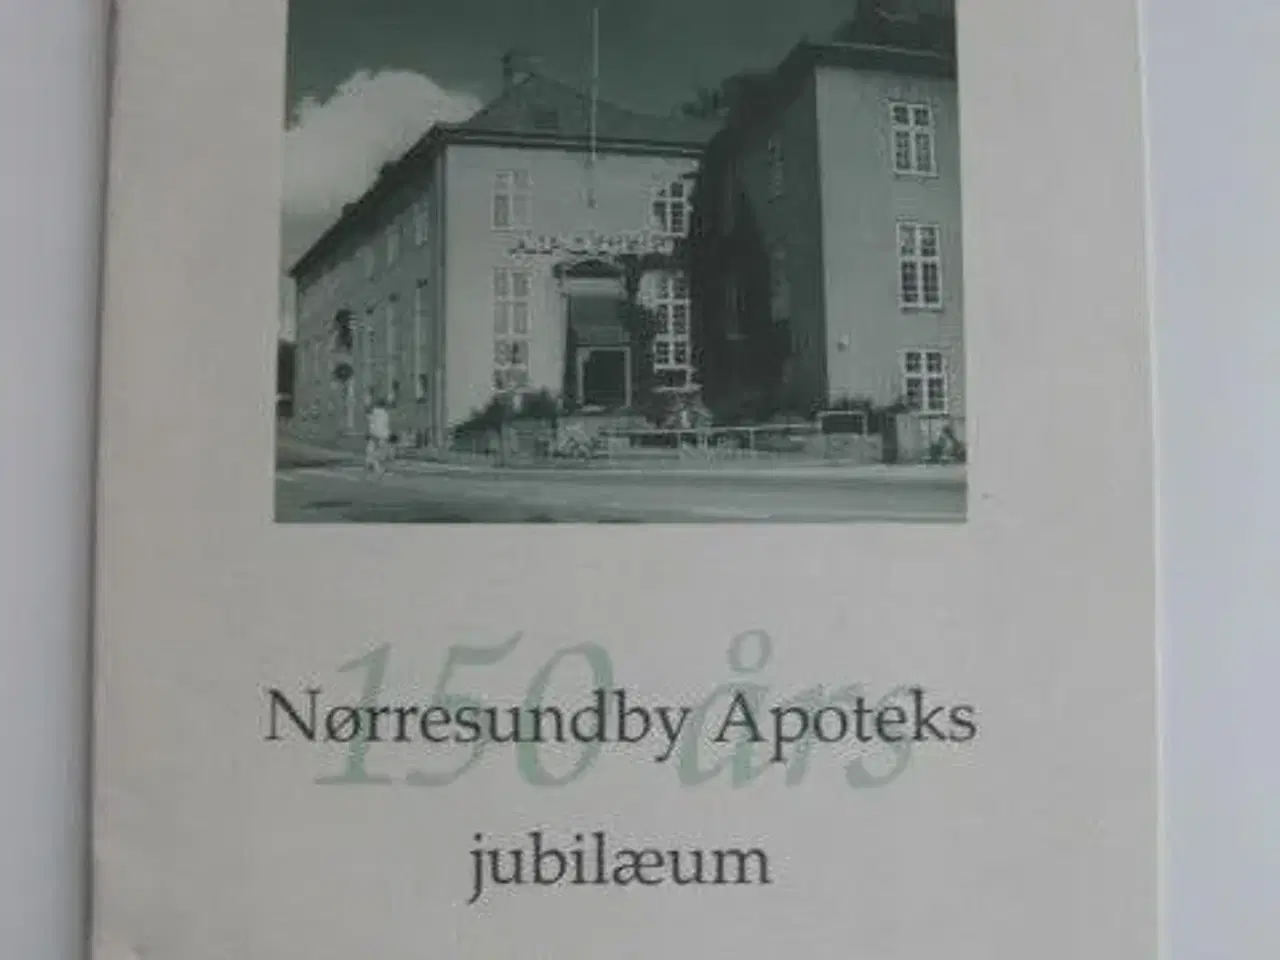 Billede 2 - Nørresundby Apoteks jubilæum